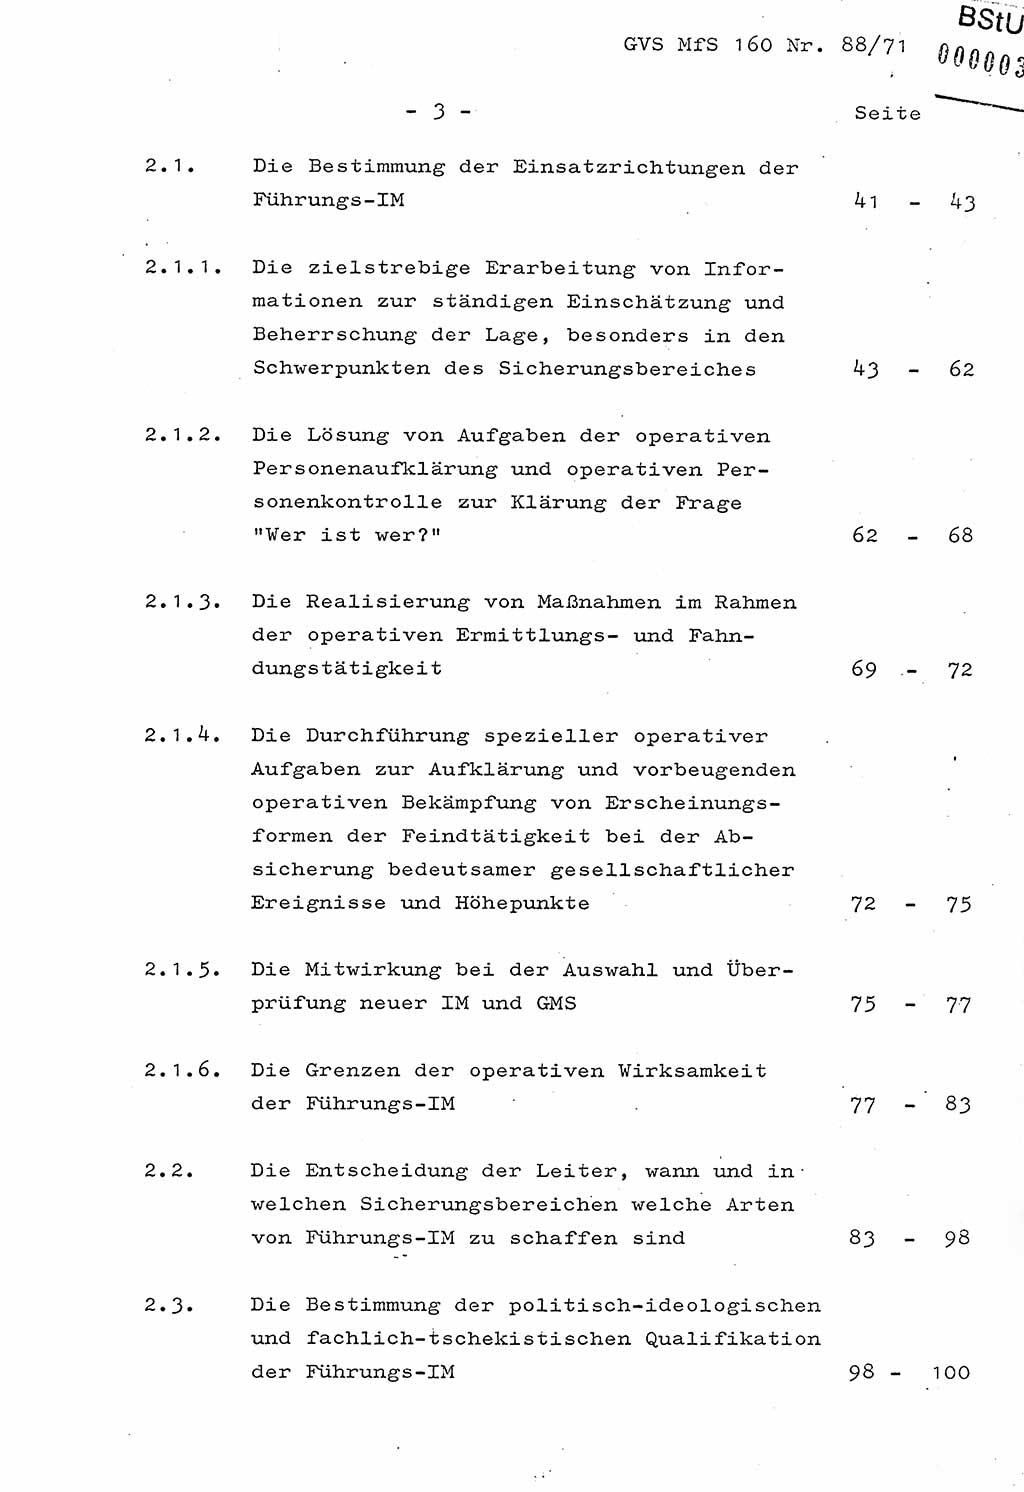 Dissertation Oberstleutnant Josef Schwarz (BV Schwerin), Major Fritz Amm (JHS), Hauptmann Peter Gräßler (JHS), Ministerium für Staatssicherheit (MfS) [Deutsche Demokratische Republik (DDR)], Juristische Hochschule (JHS), Geheime Verschlußsache (GVS) 160-88/71, Potsdam 1972, Seite 3 (Diss. MfS DDR JHS GVS 160-88/71 1972, S. 3)